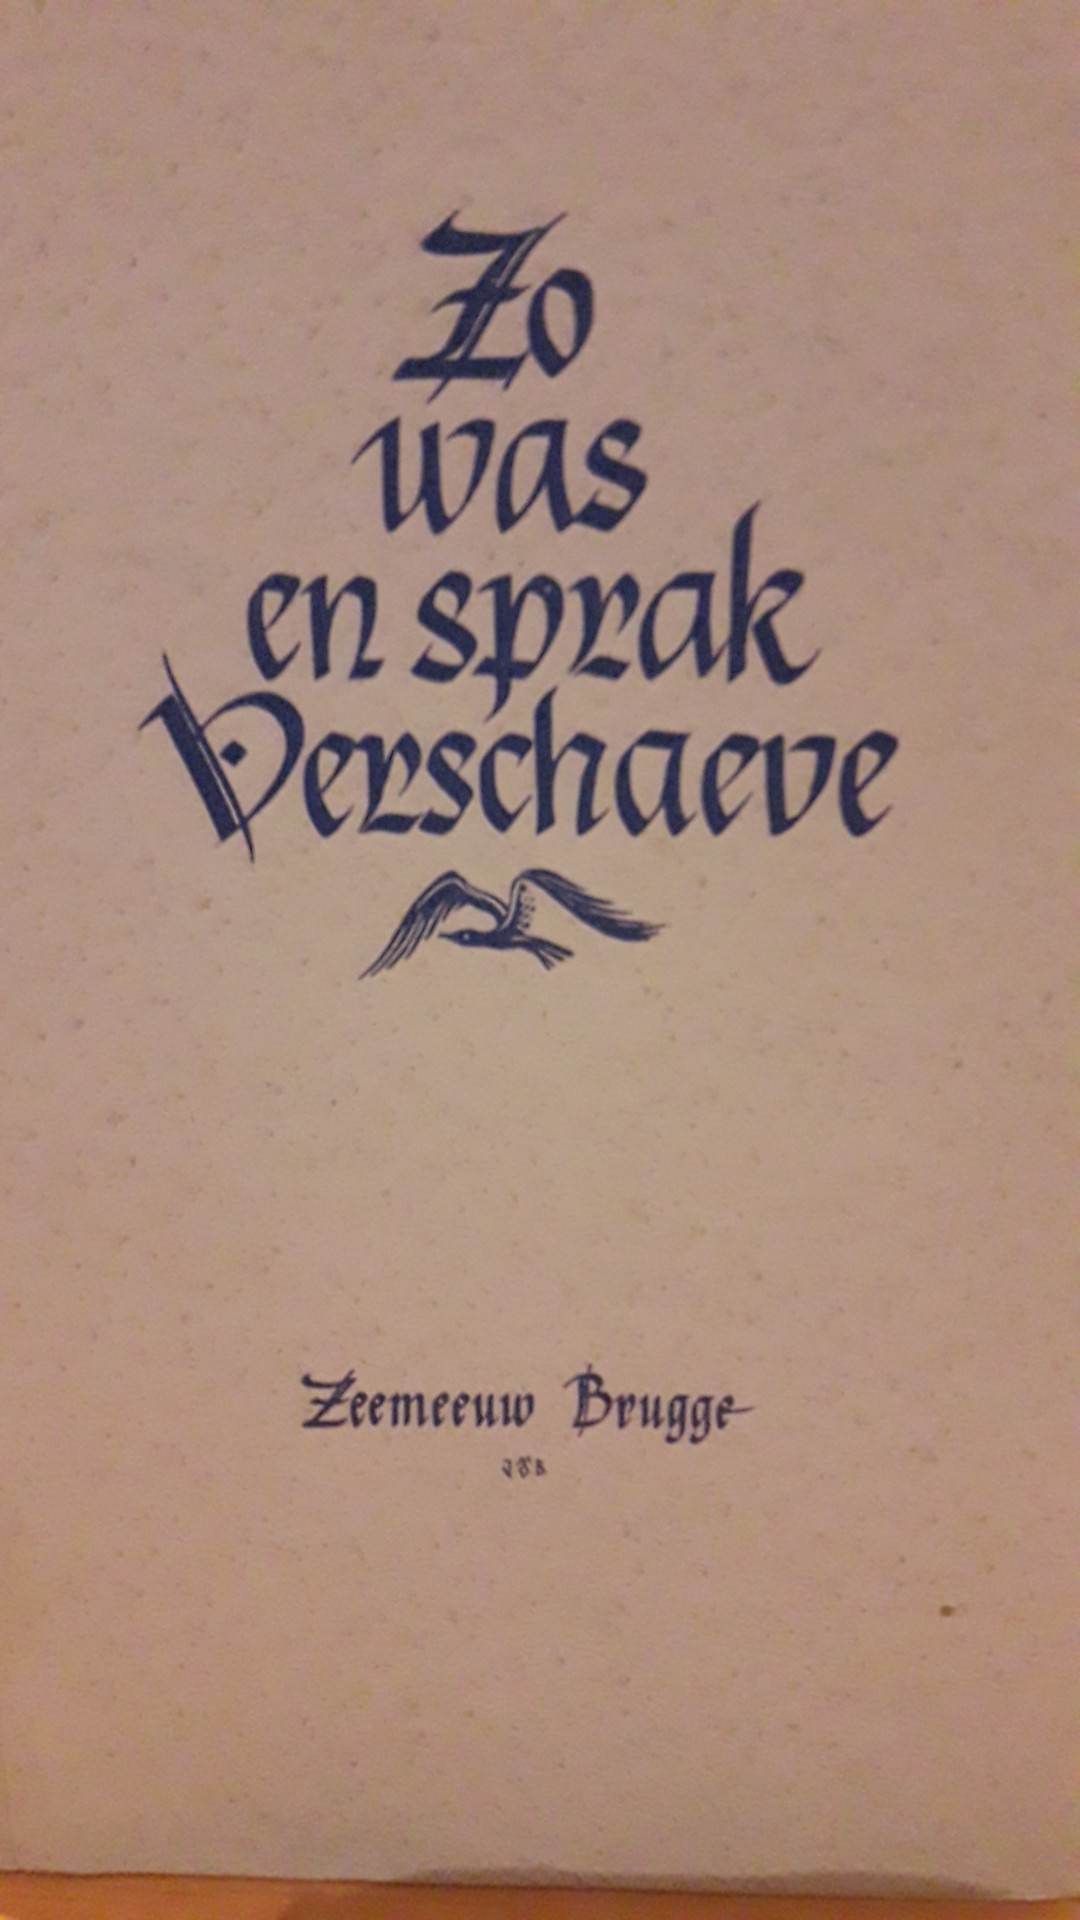 Cyriel Verschaeve - zo was en sprak Verschaeve - uitgave 1952 / 80 blz